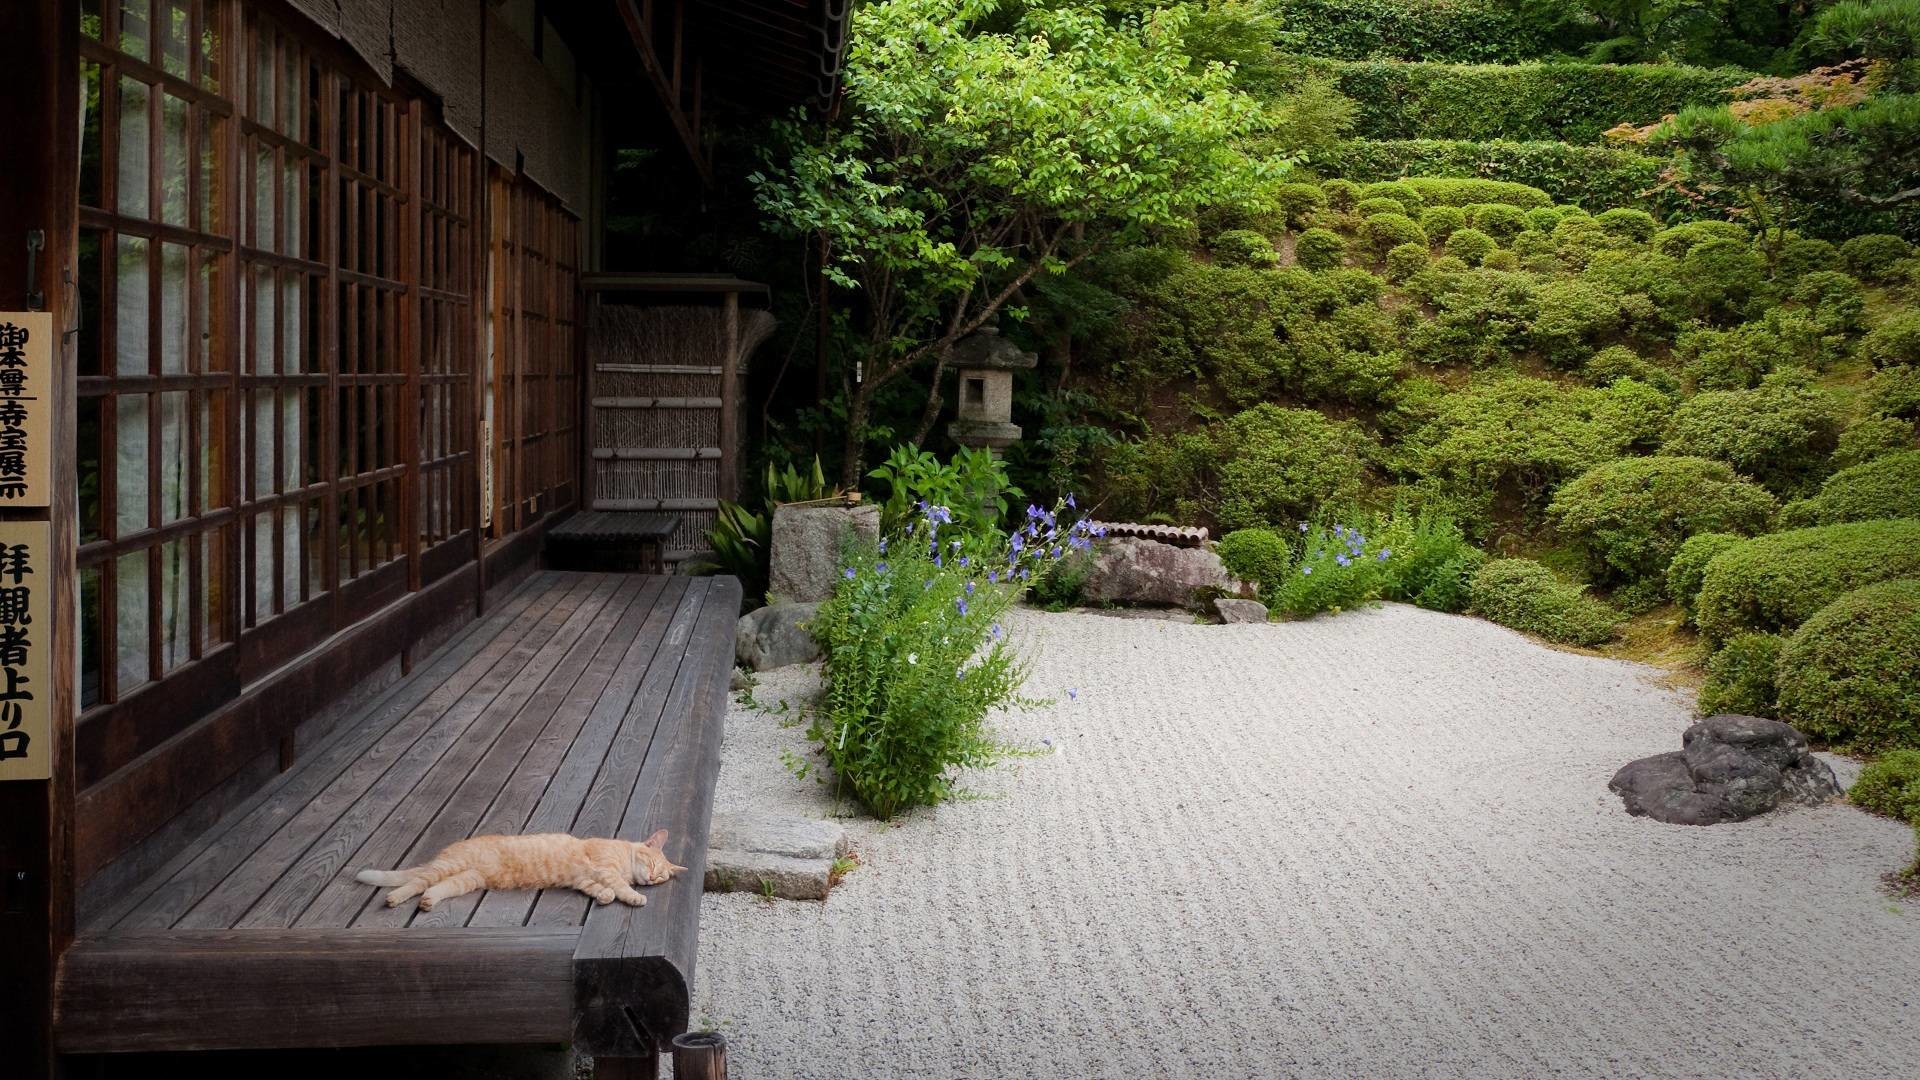 Zen Garden Images – Browse 261,626 Stock Photos, Vectors, and Video | Adobe  Stock